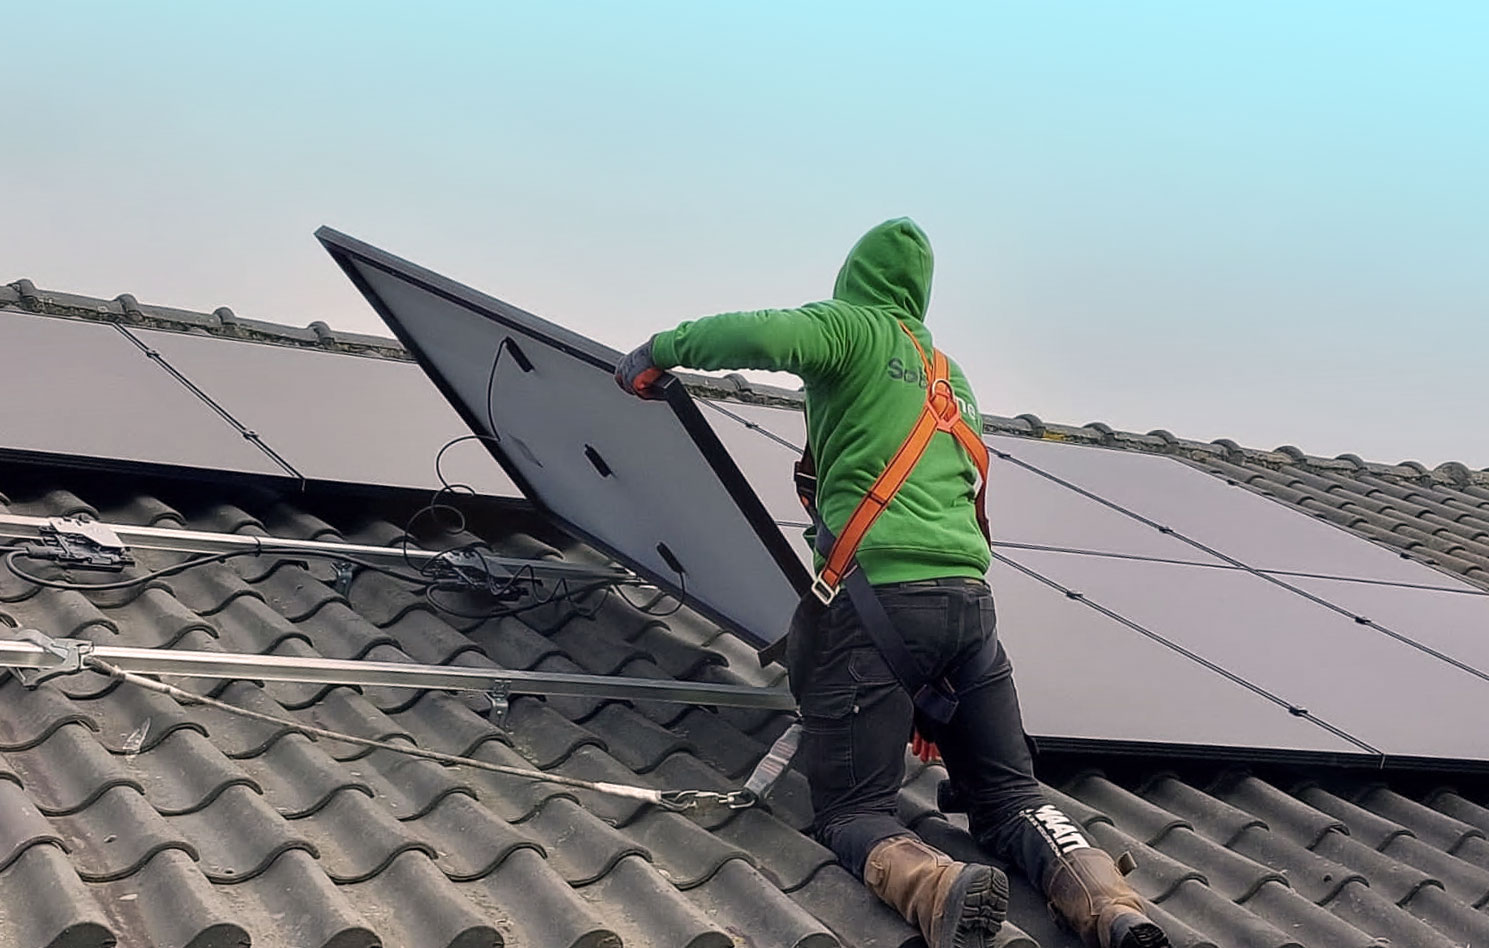 SolarOne Klimaattechniek zonne-energie solar installatie zonnepanelen laadpalen meterkasten warmtepompen